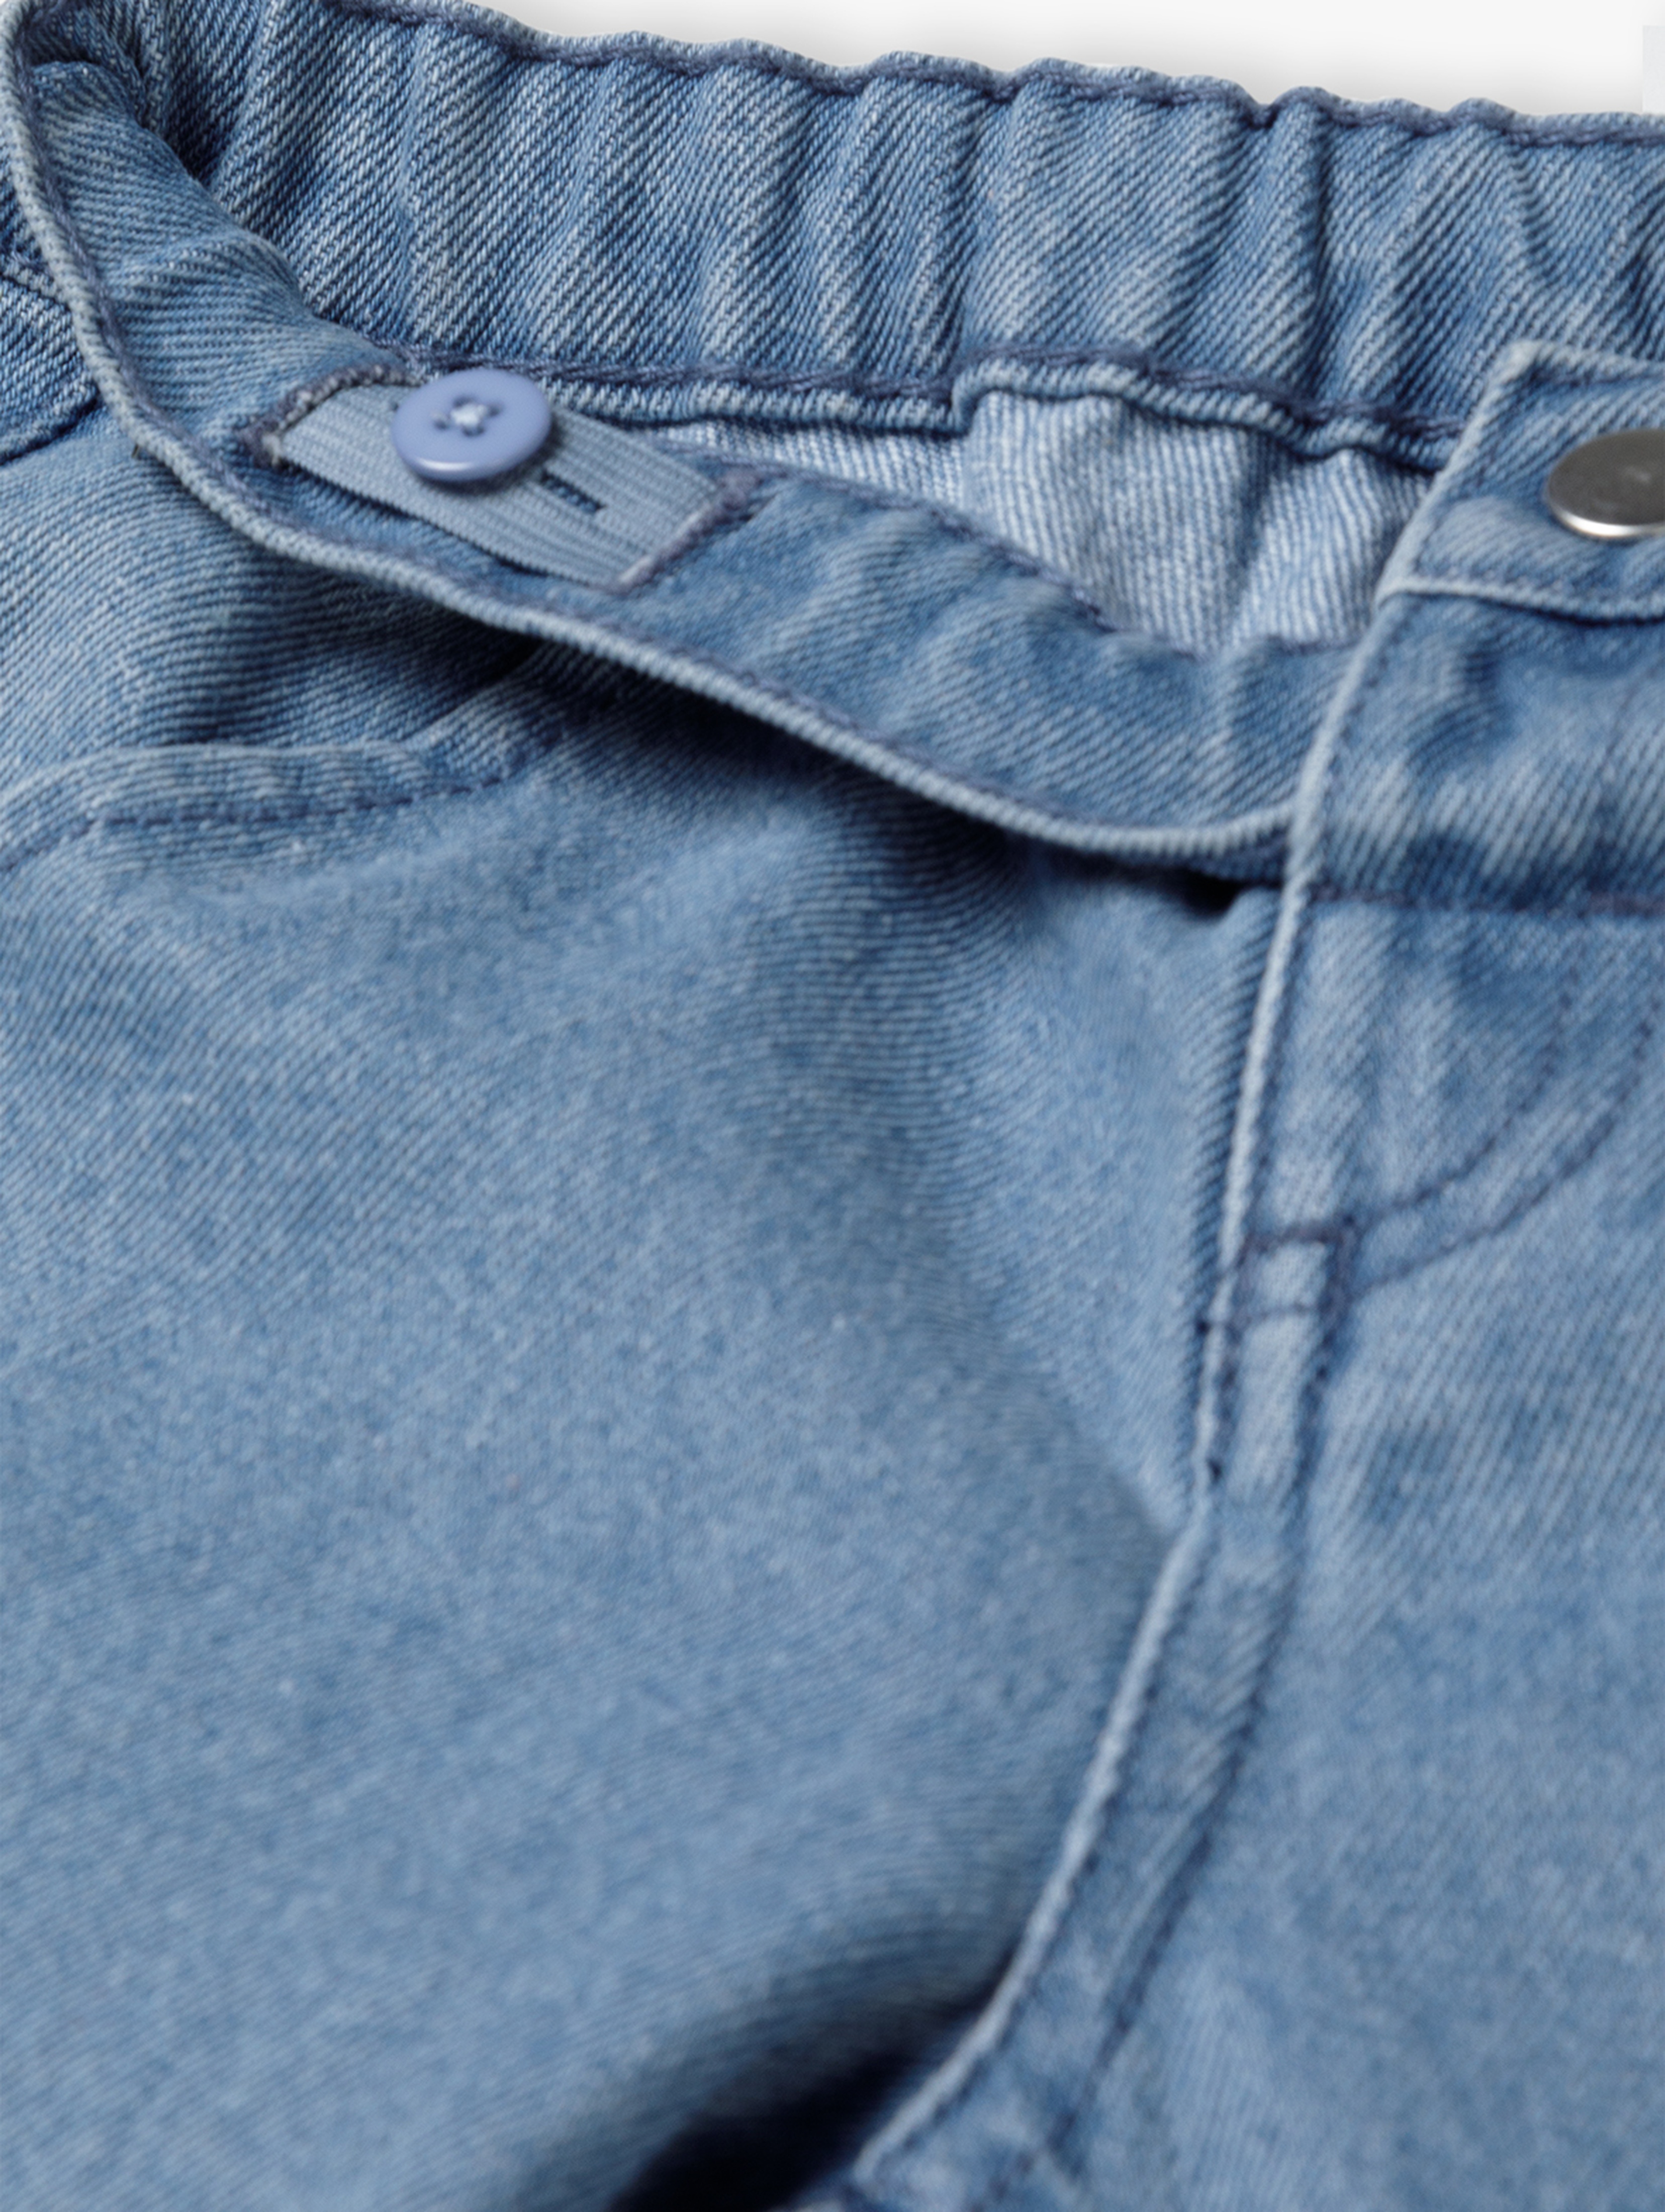 Jeansowe spodnie dla chłopca - niebieskie - 5.10.15.